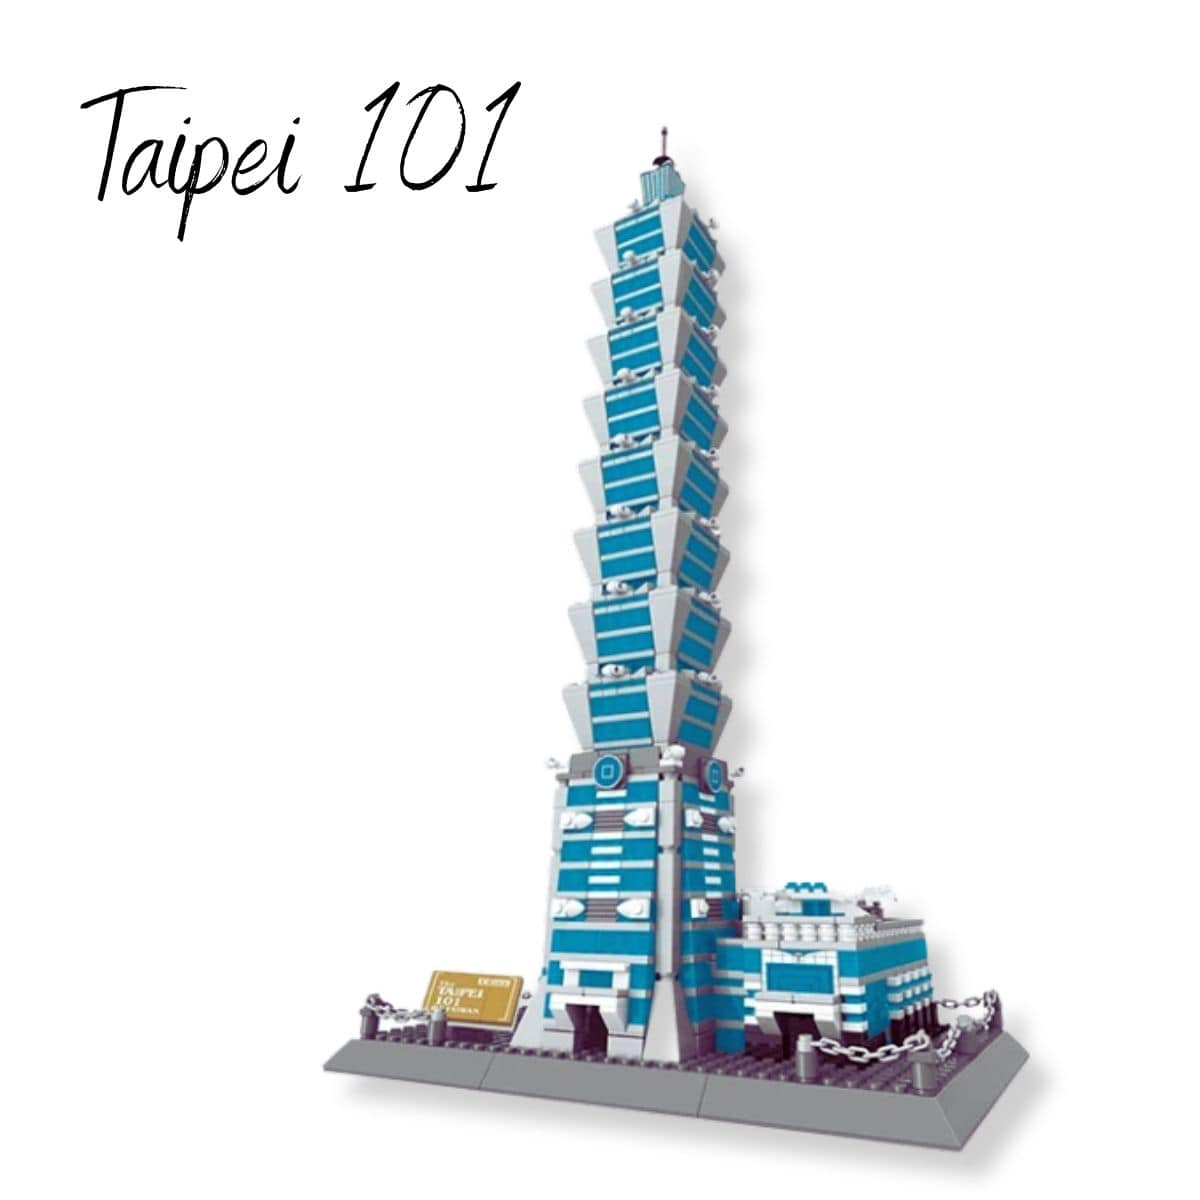 Puzzle 3D Taipei 101 | Taipei 101 Puzzle 3d Monument  | Taipei 101